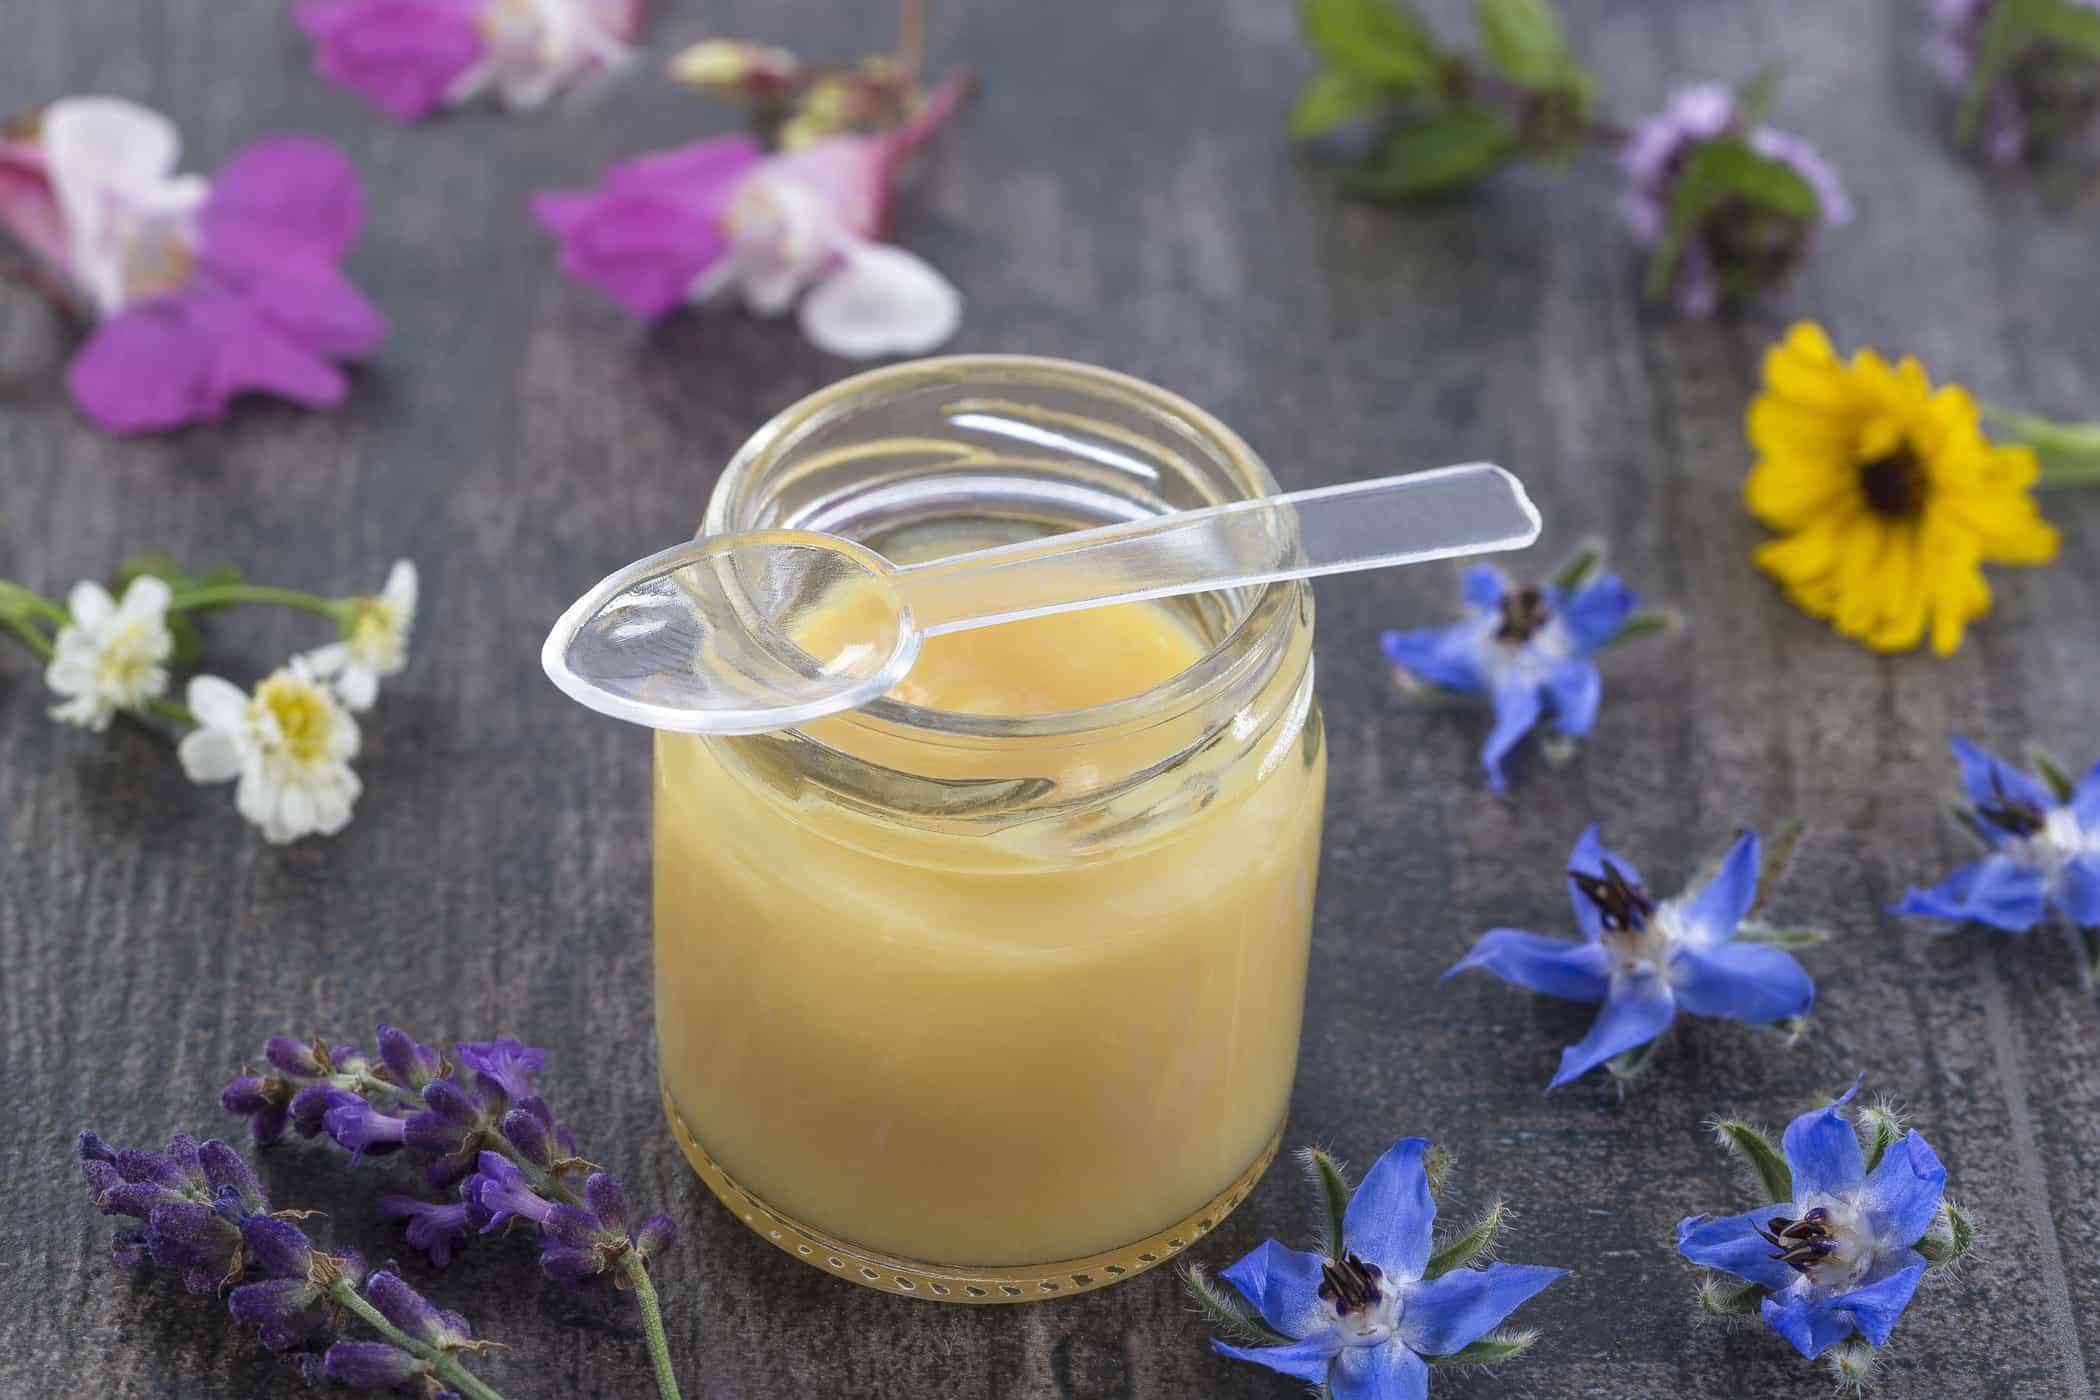 Sữa ong chúa là phương pháp giảm cân an toàn bằng cách làm giảm đường huyết và đốt cháy mỡ dư thừa.